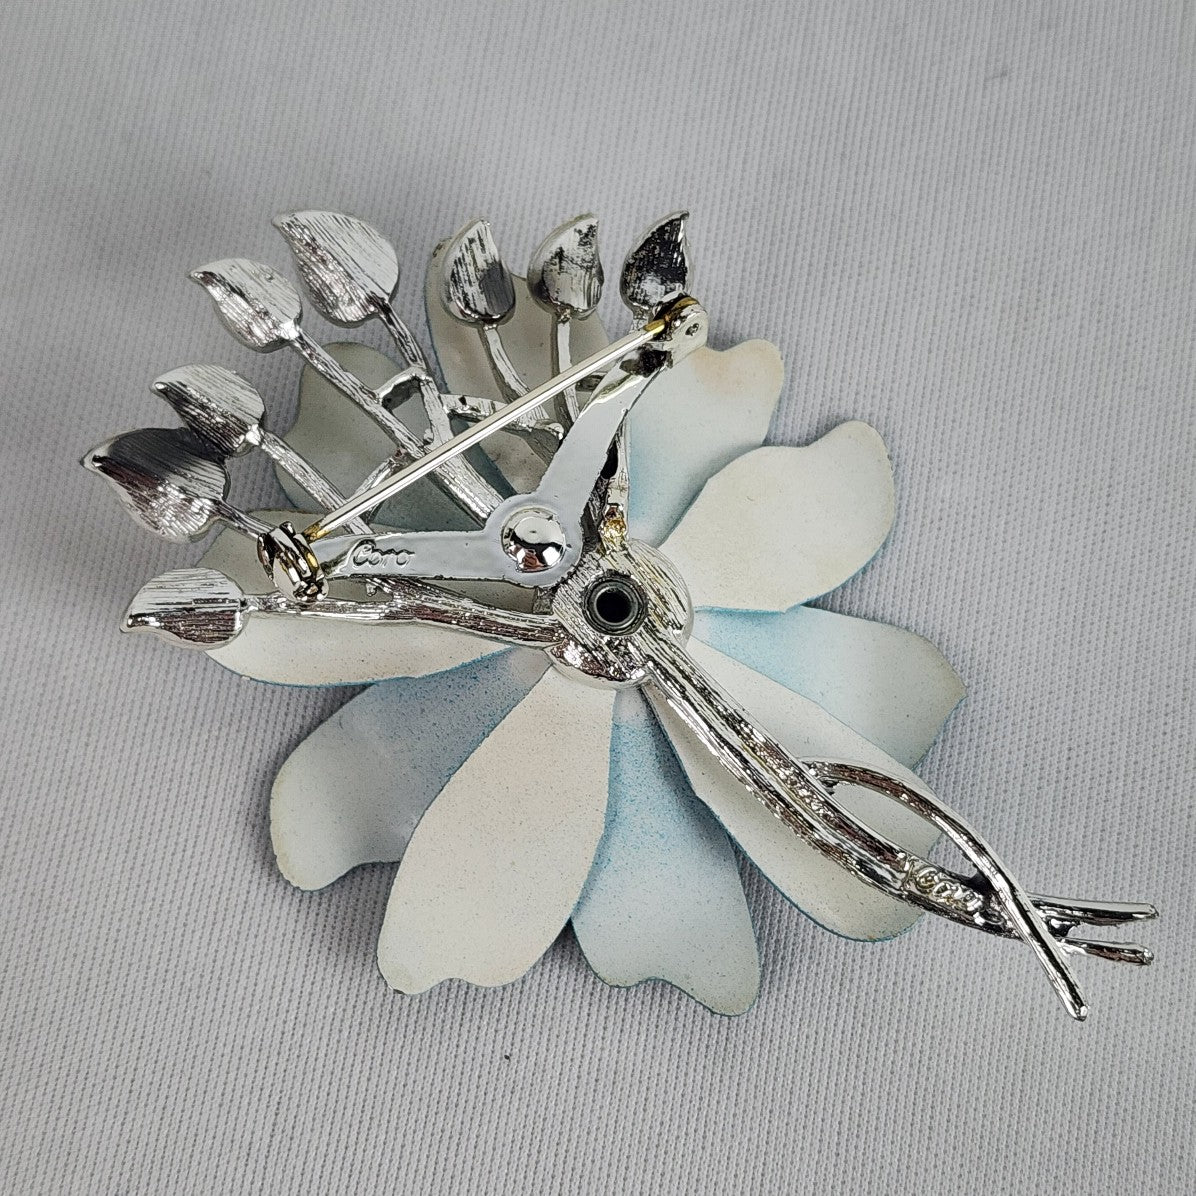 Vintage Coro Silver Tone Blue Enamel Flower Brooch & Clip On Earring Set